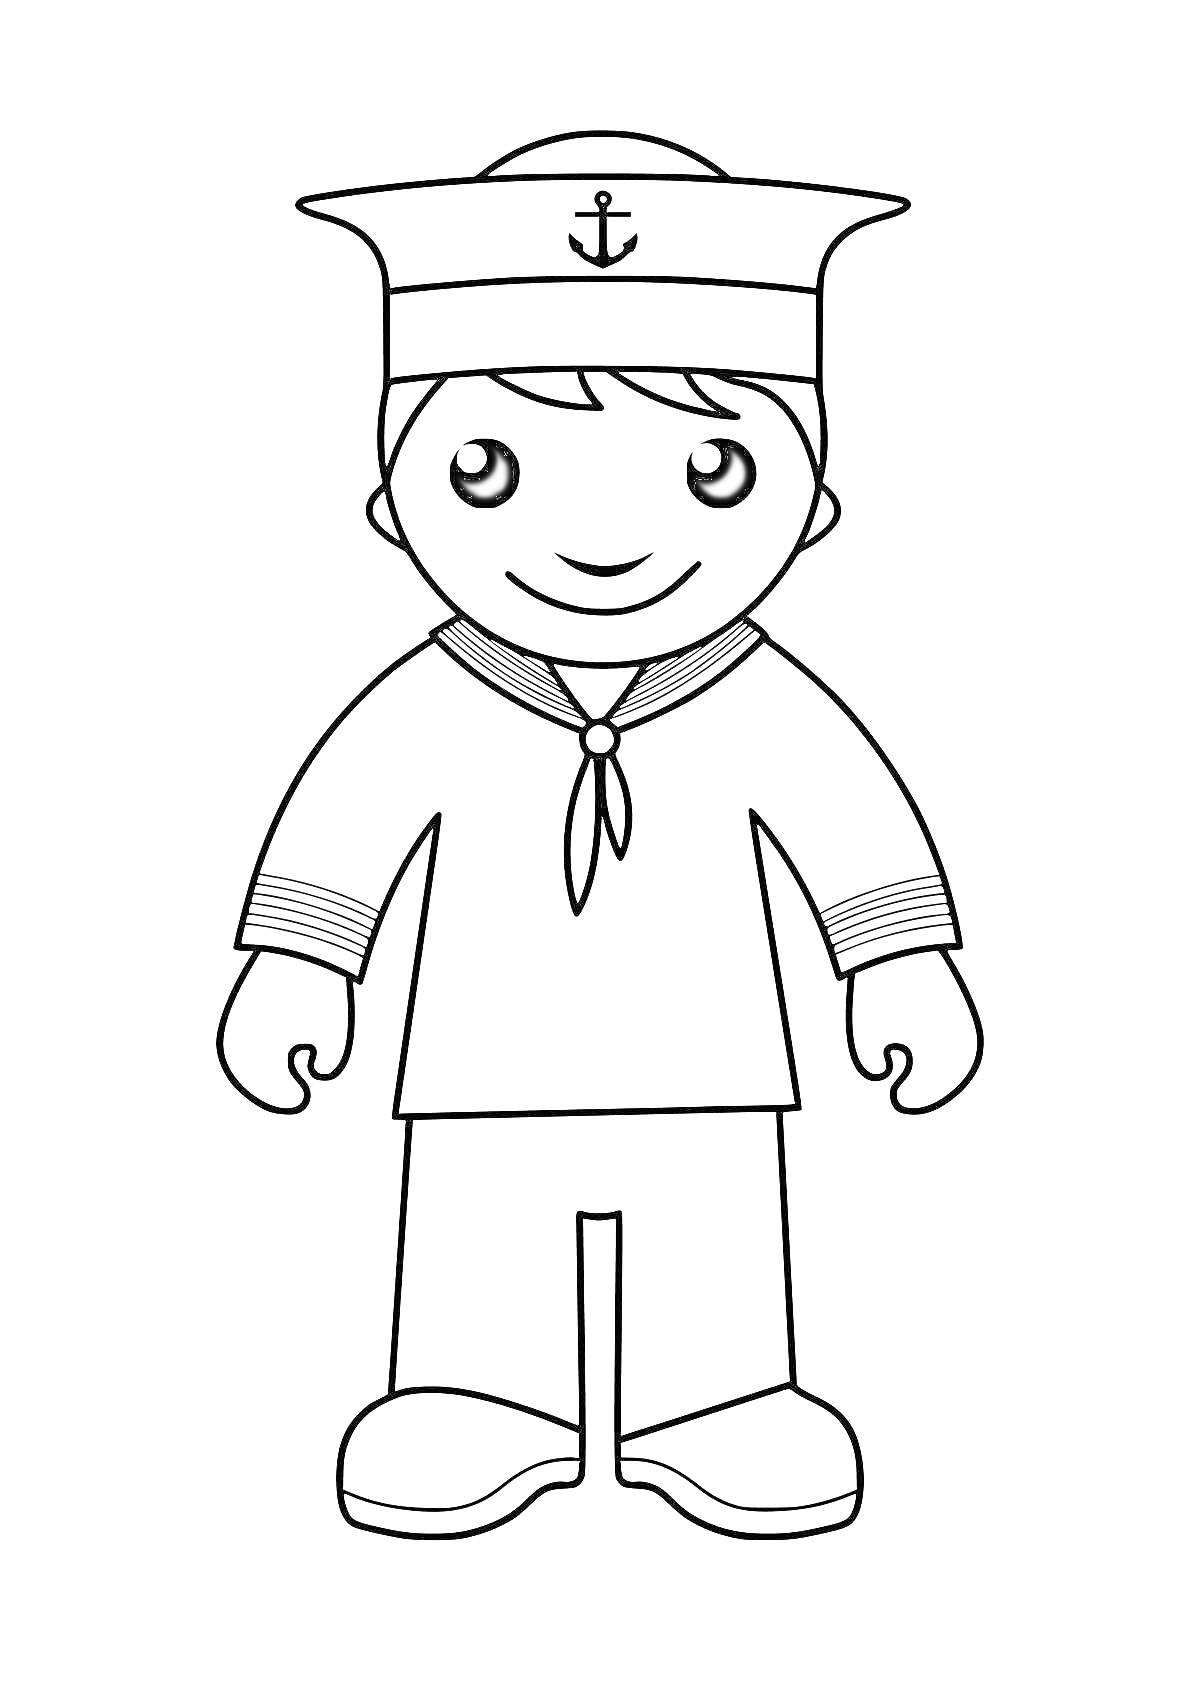 Раскраска Мальчик-солдат в морской форме с бескозыркой и галстуком